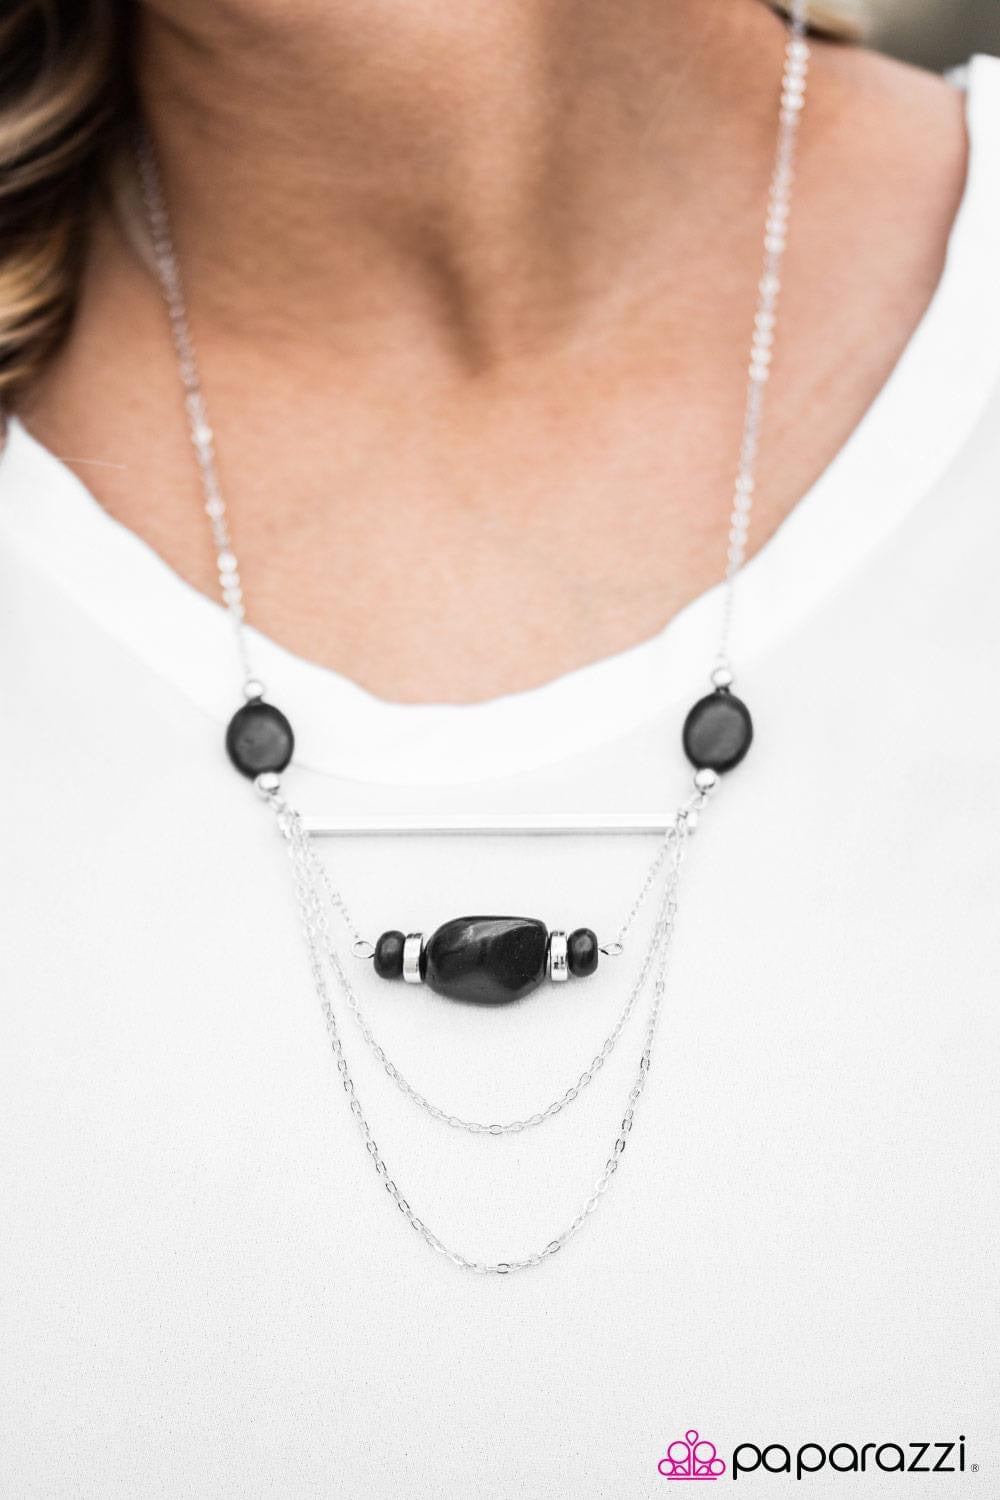 Vintage Paparazzi “Creek Couture” Black Stone Necklace